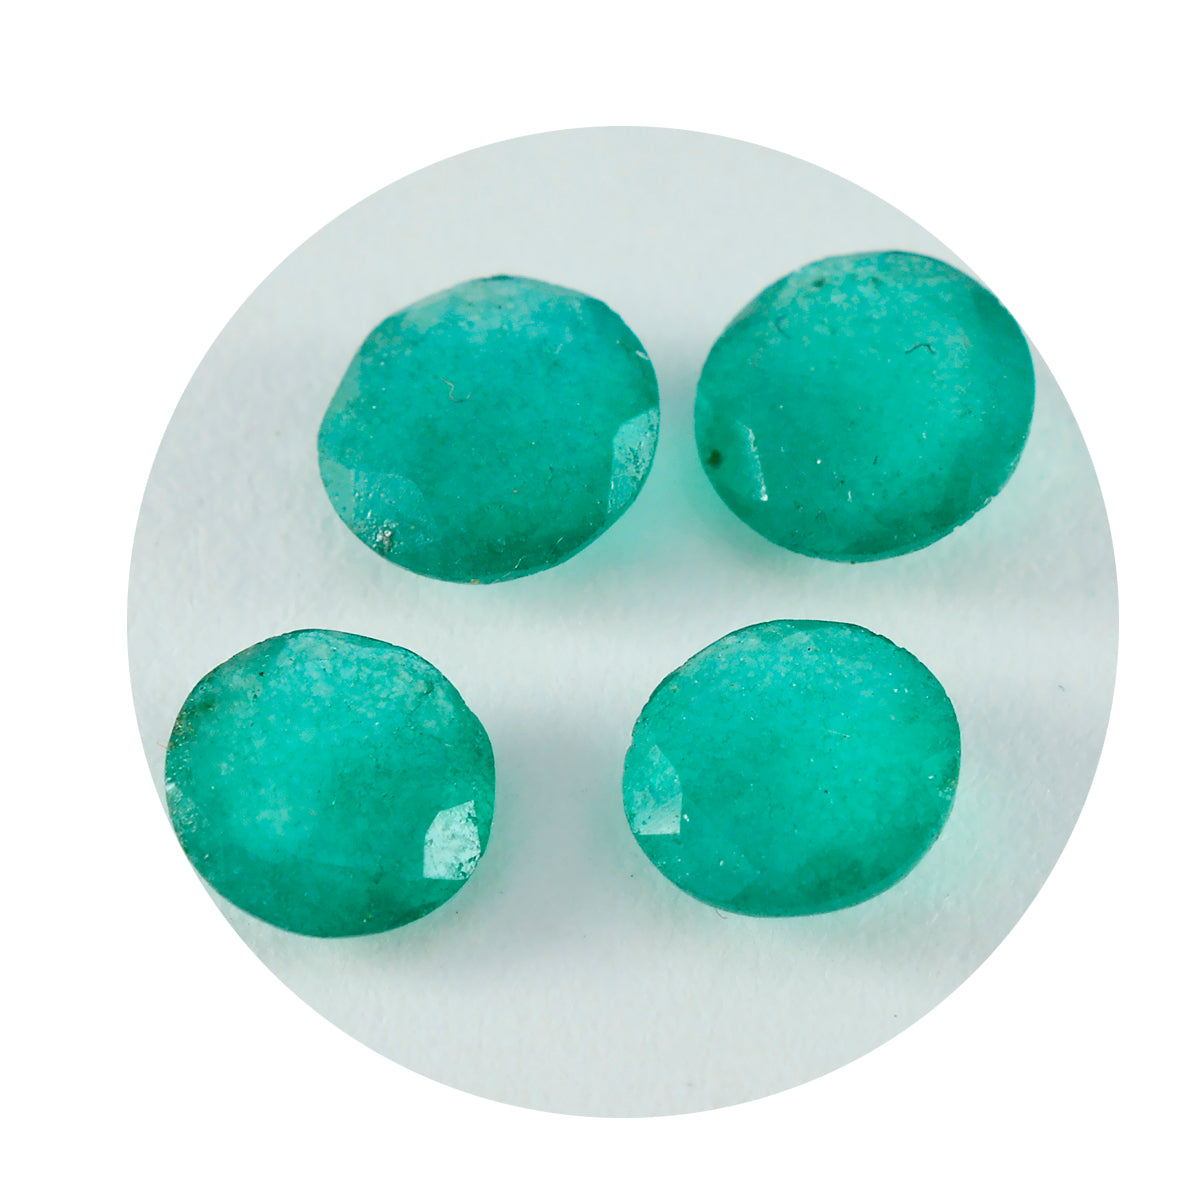 Riyogems 1 Stück natürlicher grüner Jaspis, facettiert, 10 x 10 mm, runde Form, Edelstein von ausgezeichneter Qualität